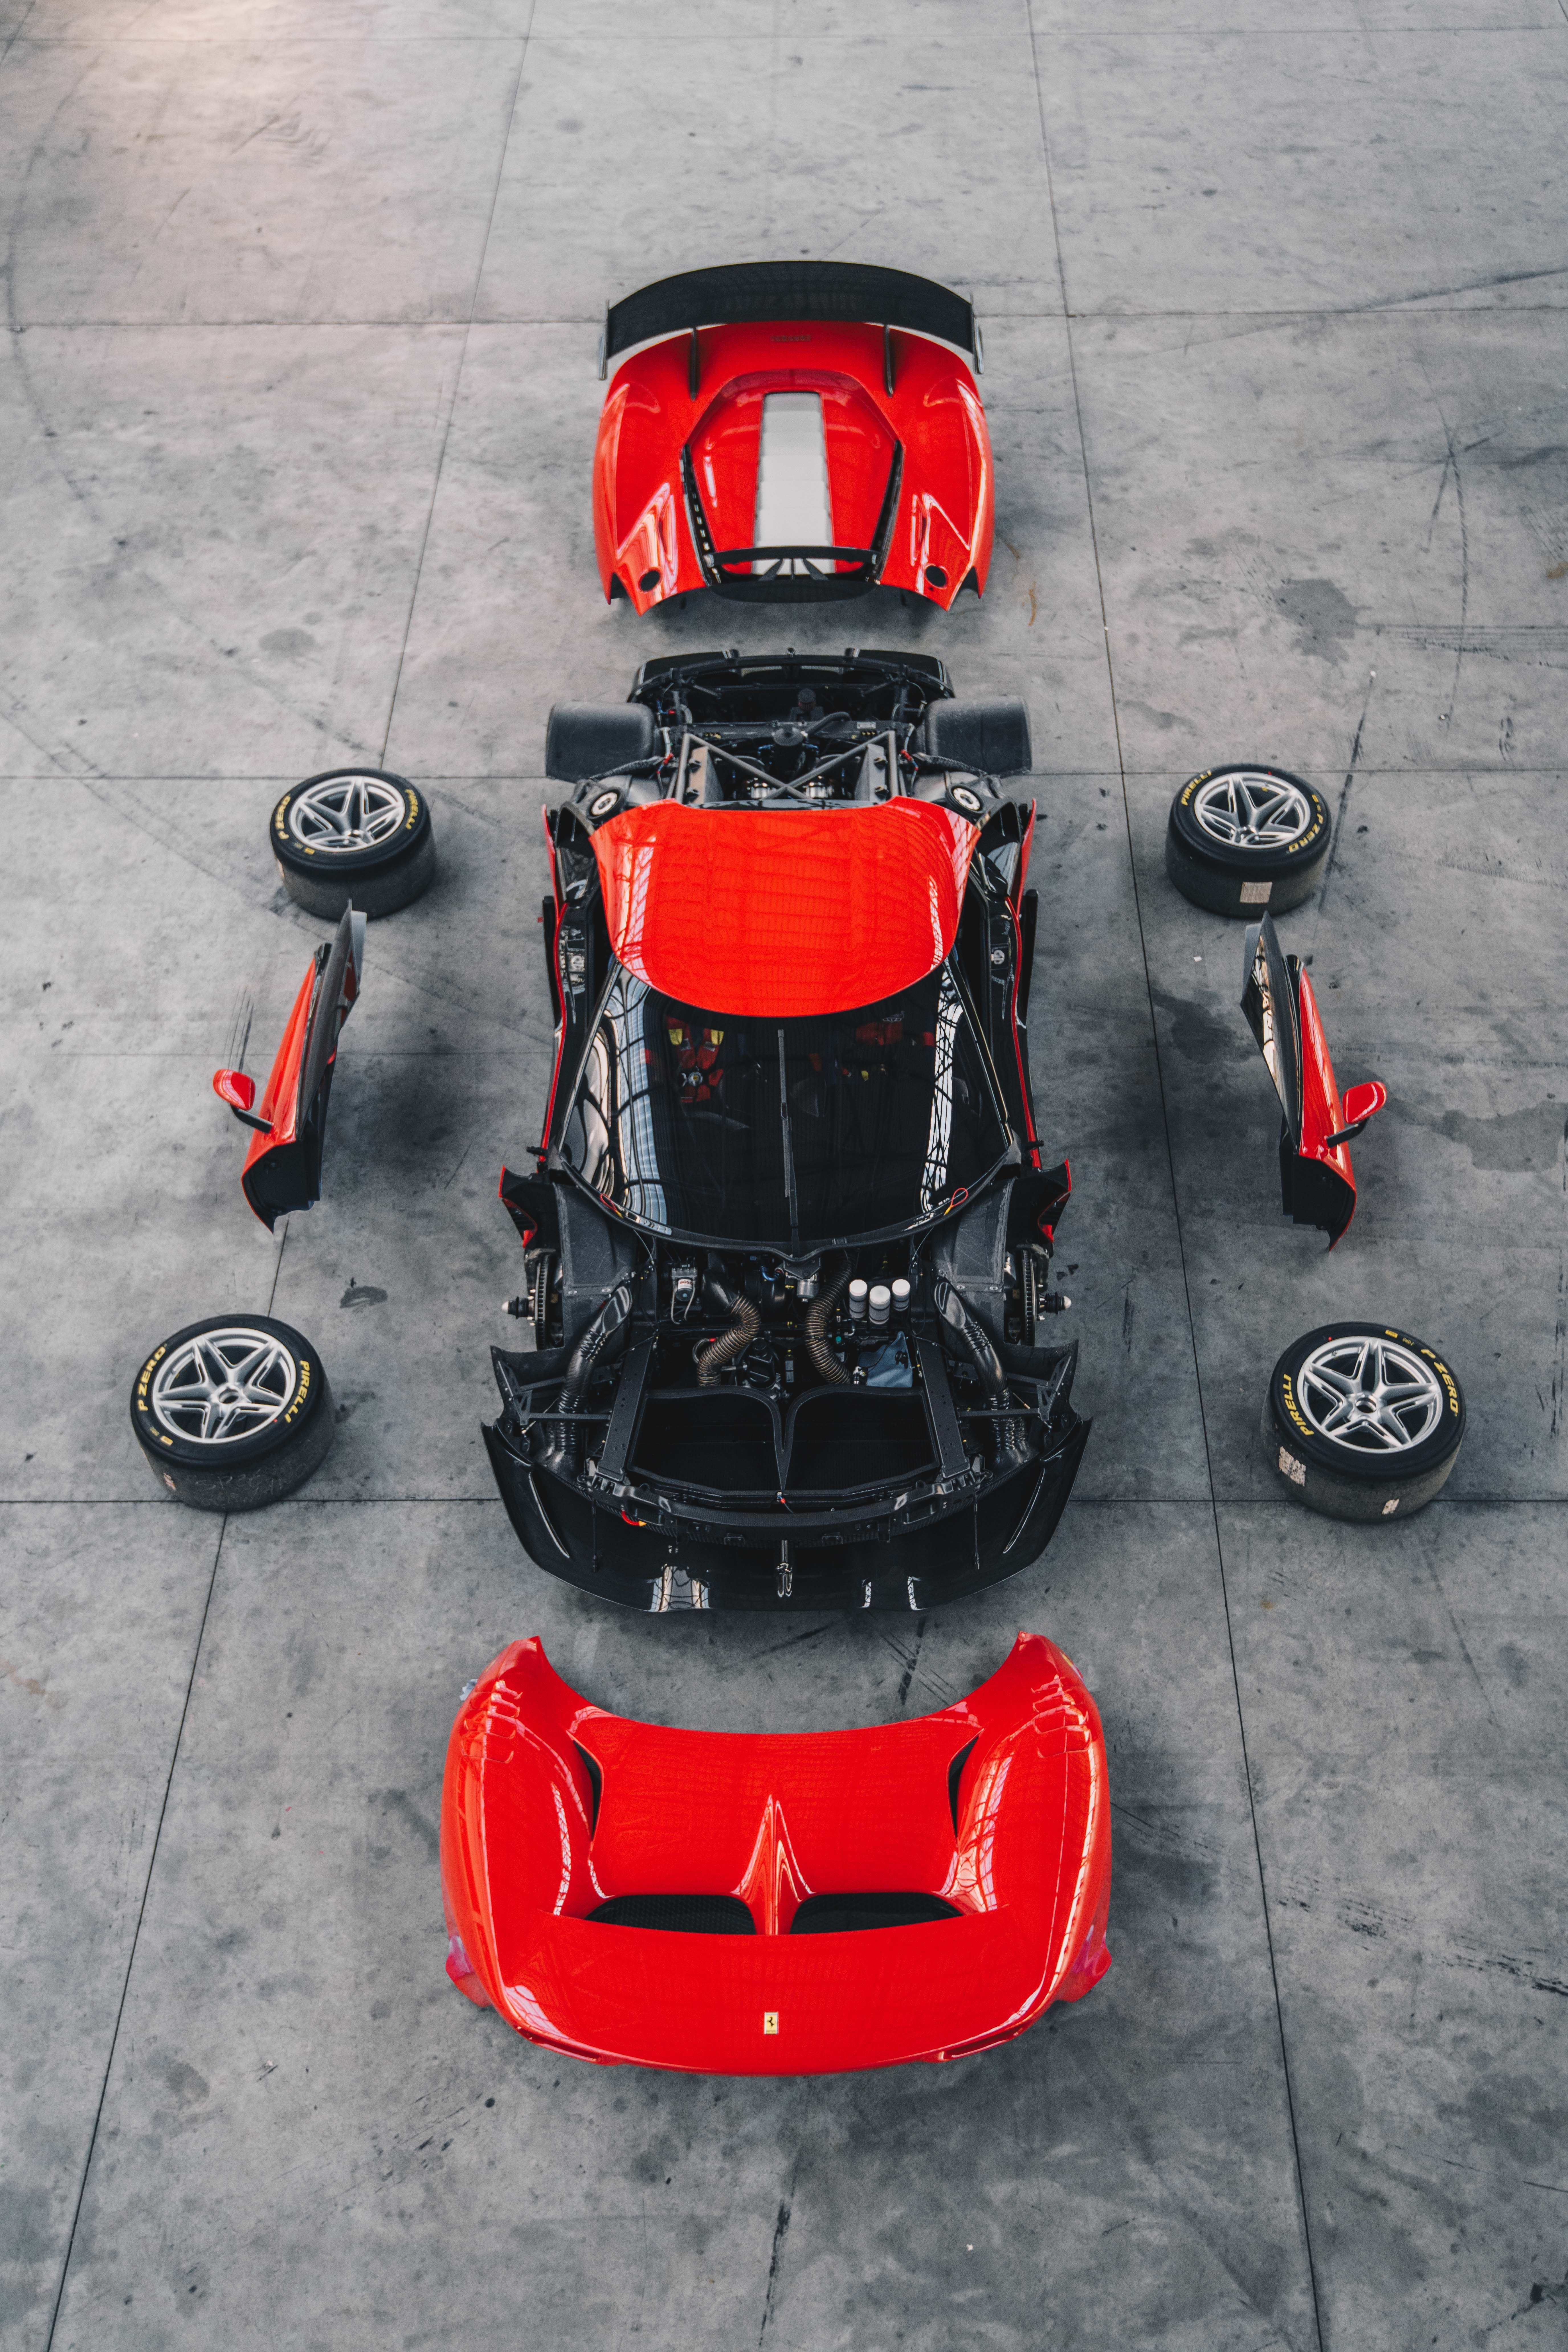 2019 Ferrari P80/C